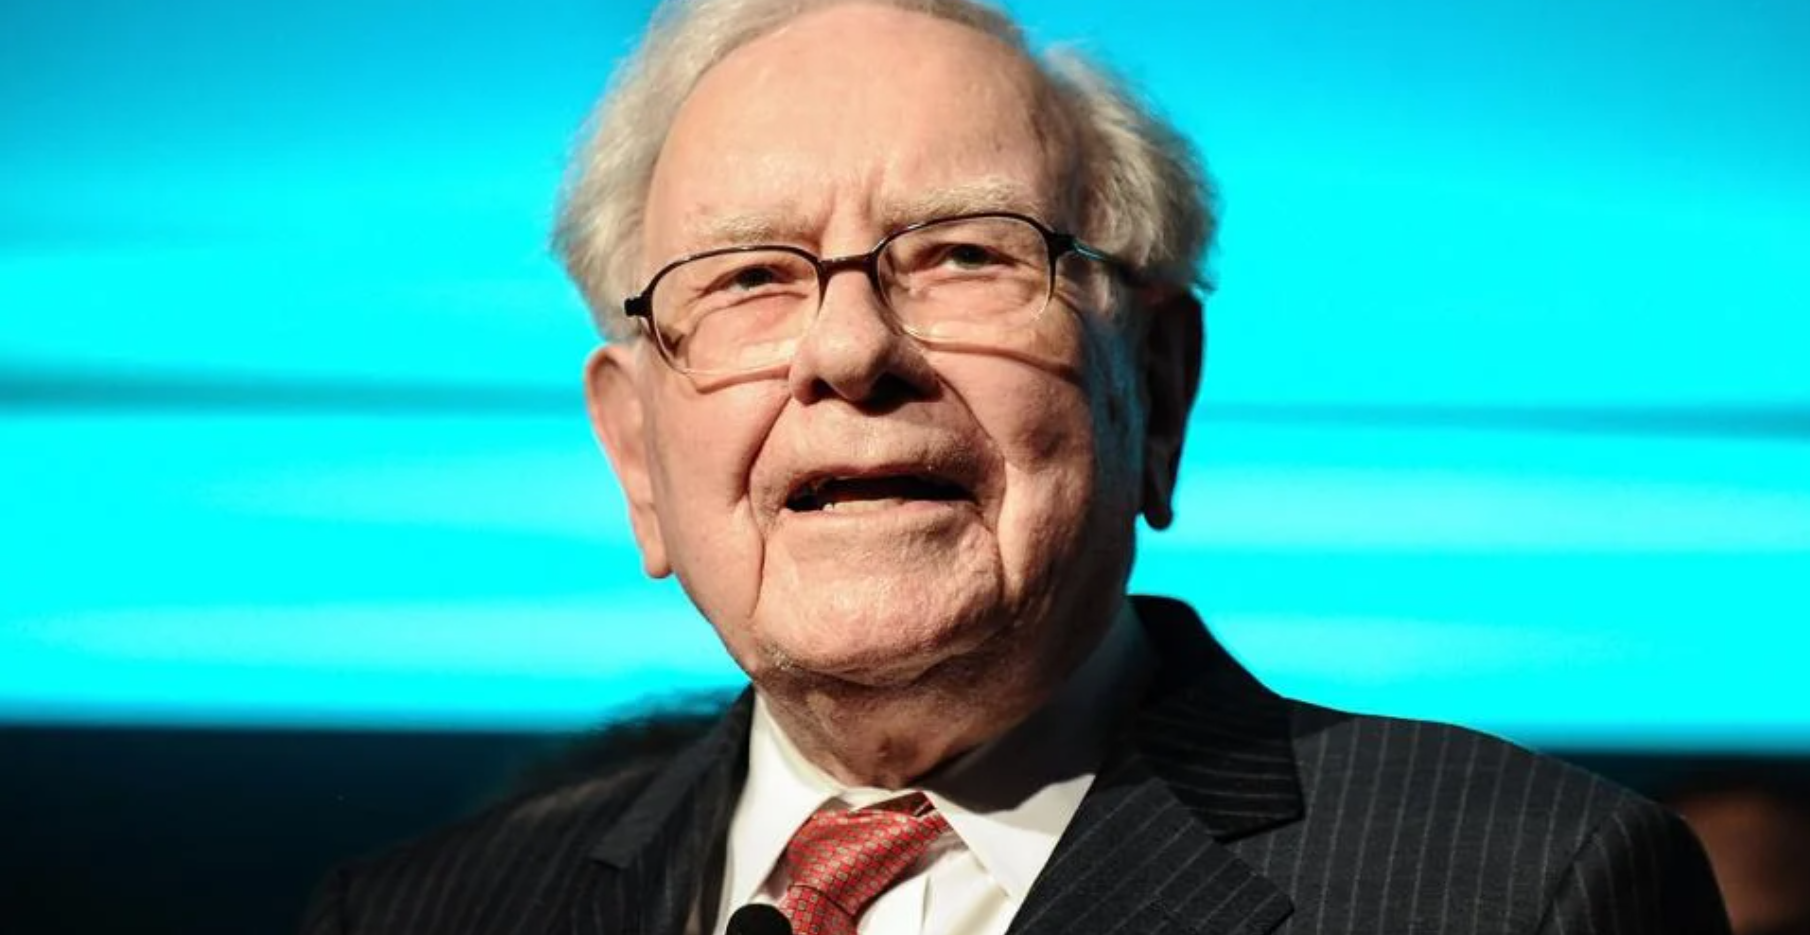 Hoe kijkt Warren Buffet naar de raad van bestuur?